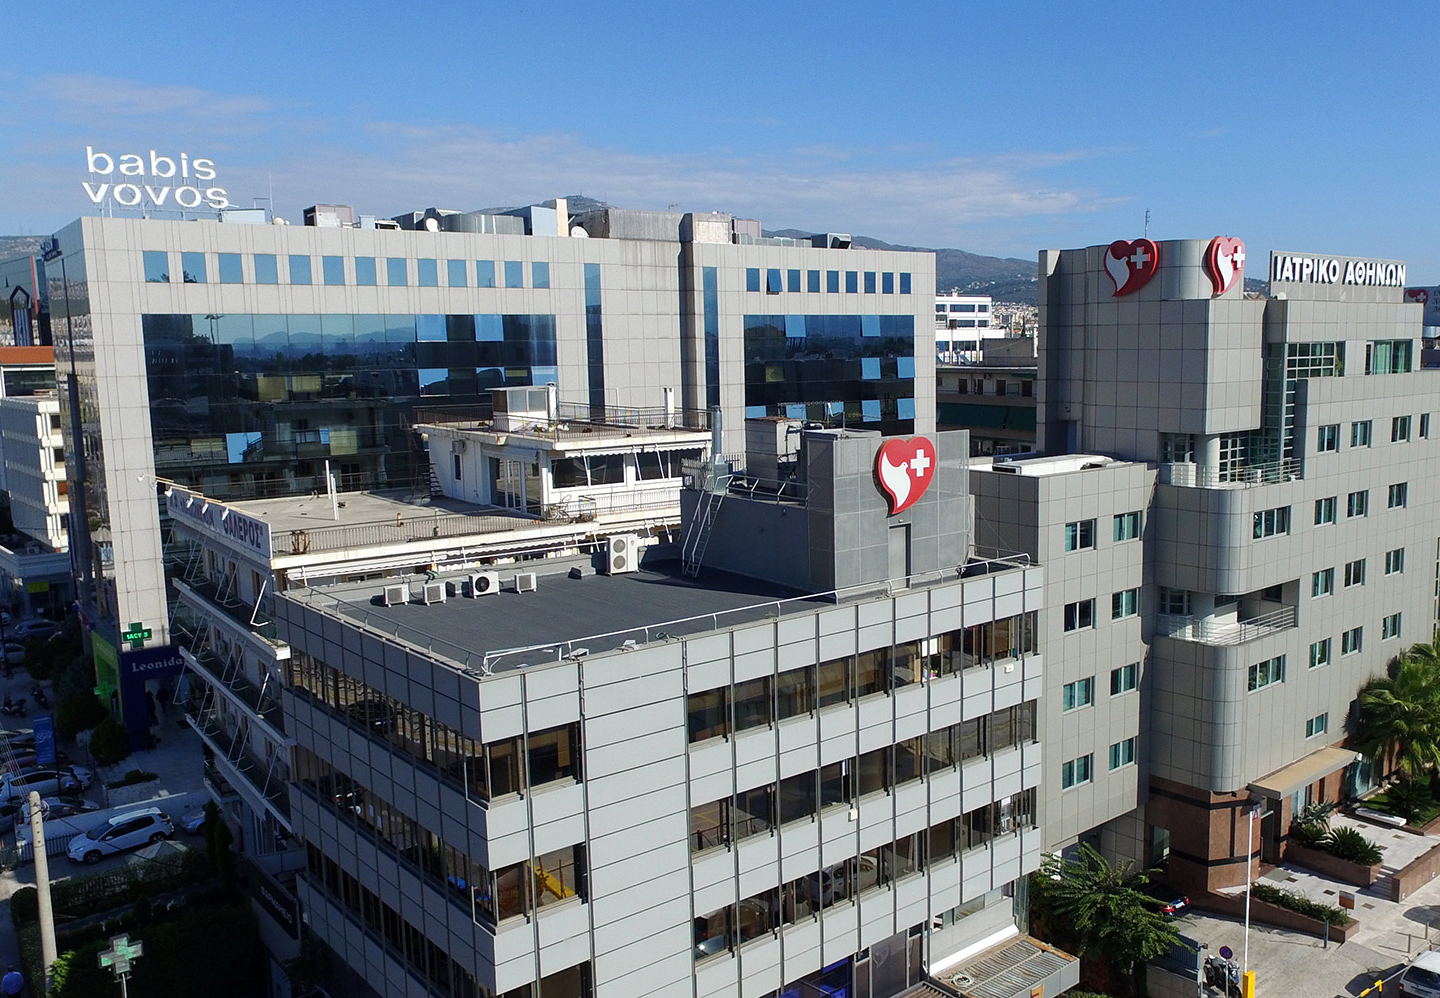 Ιατρικό Αθηνών: Συμφωνία με τη Lamda Development για τη δημιουργία νοσοκομείου στο Ελληνικό